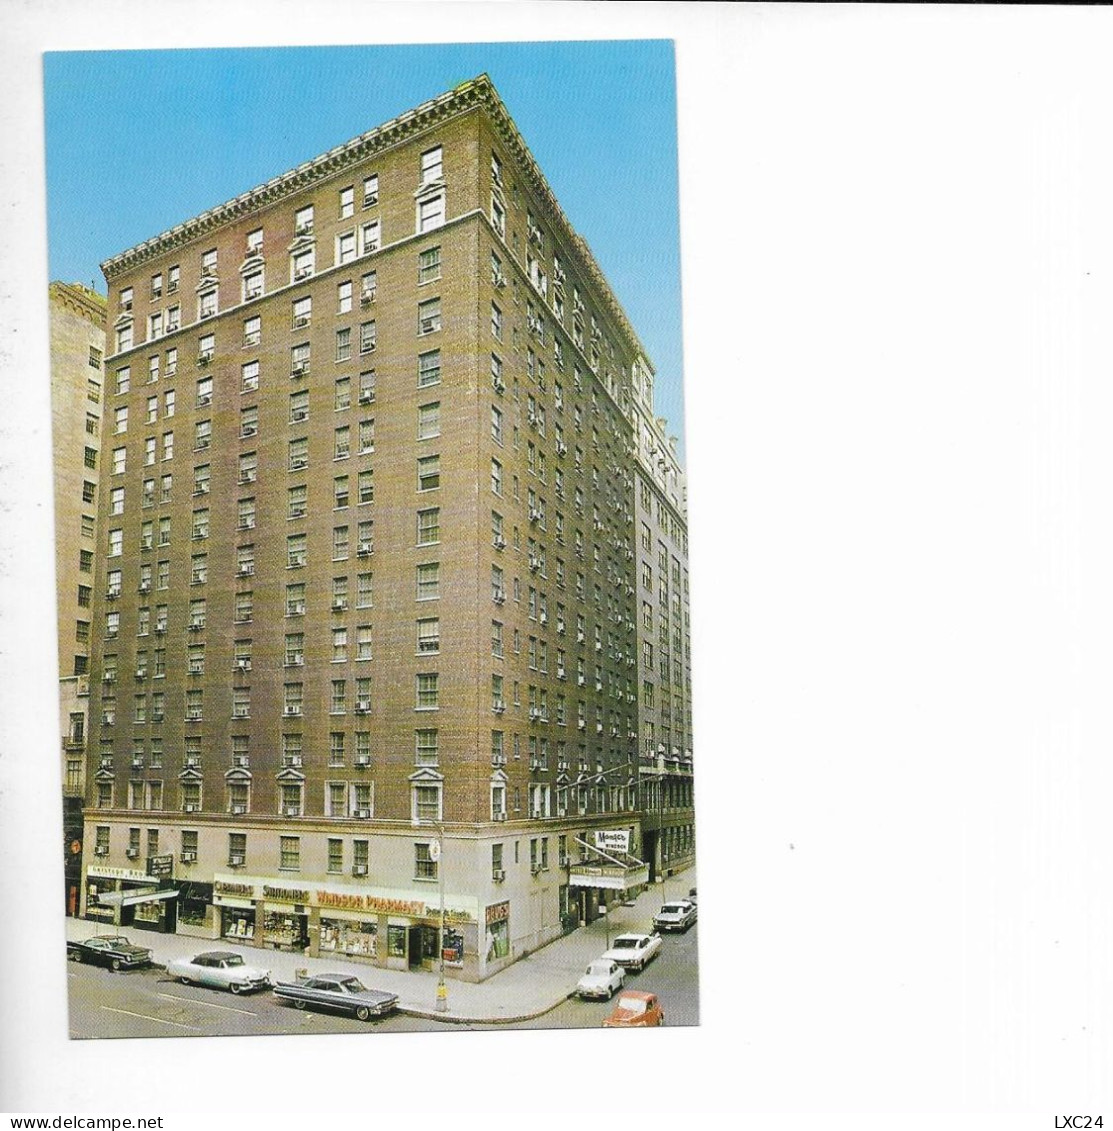 THE MANGER WINDSOR HOTEL. NEW YORK. - Wirtschaften, Hotels & Restaurants